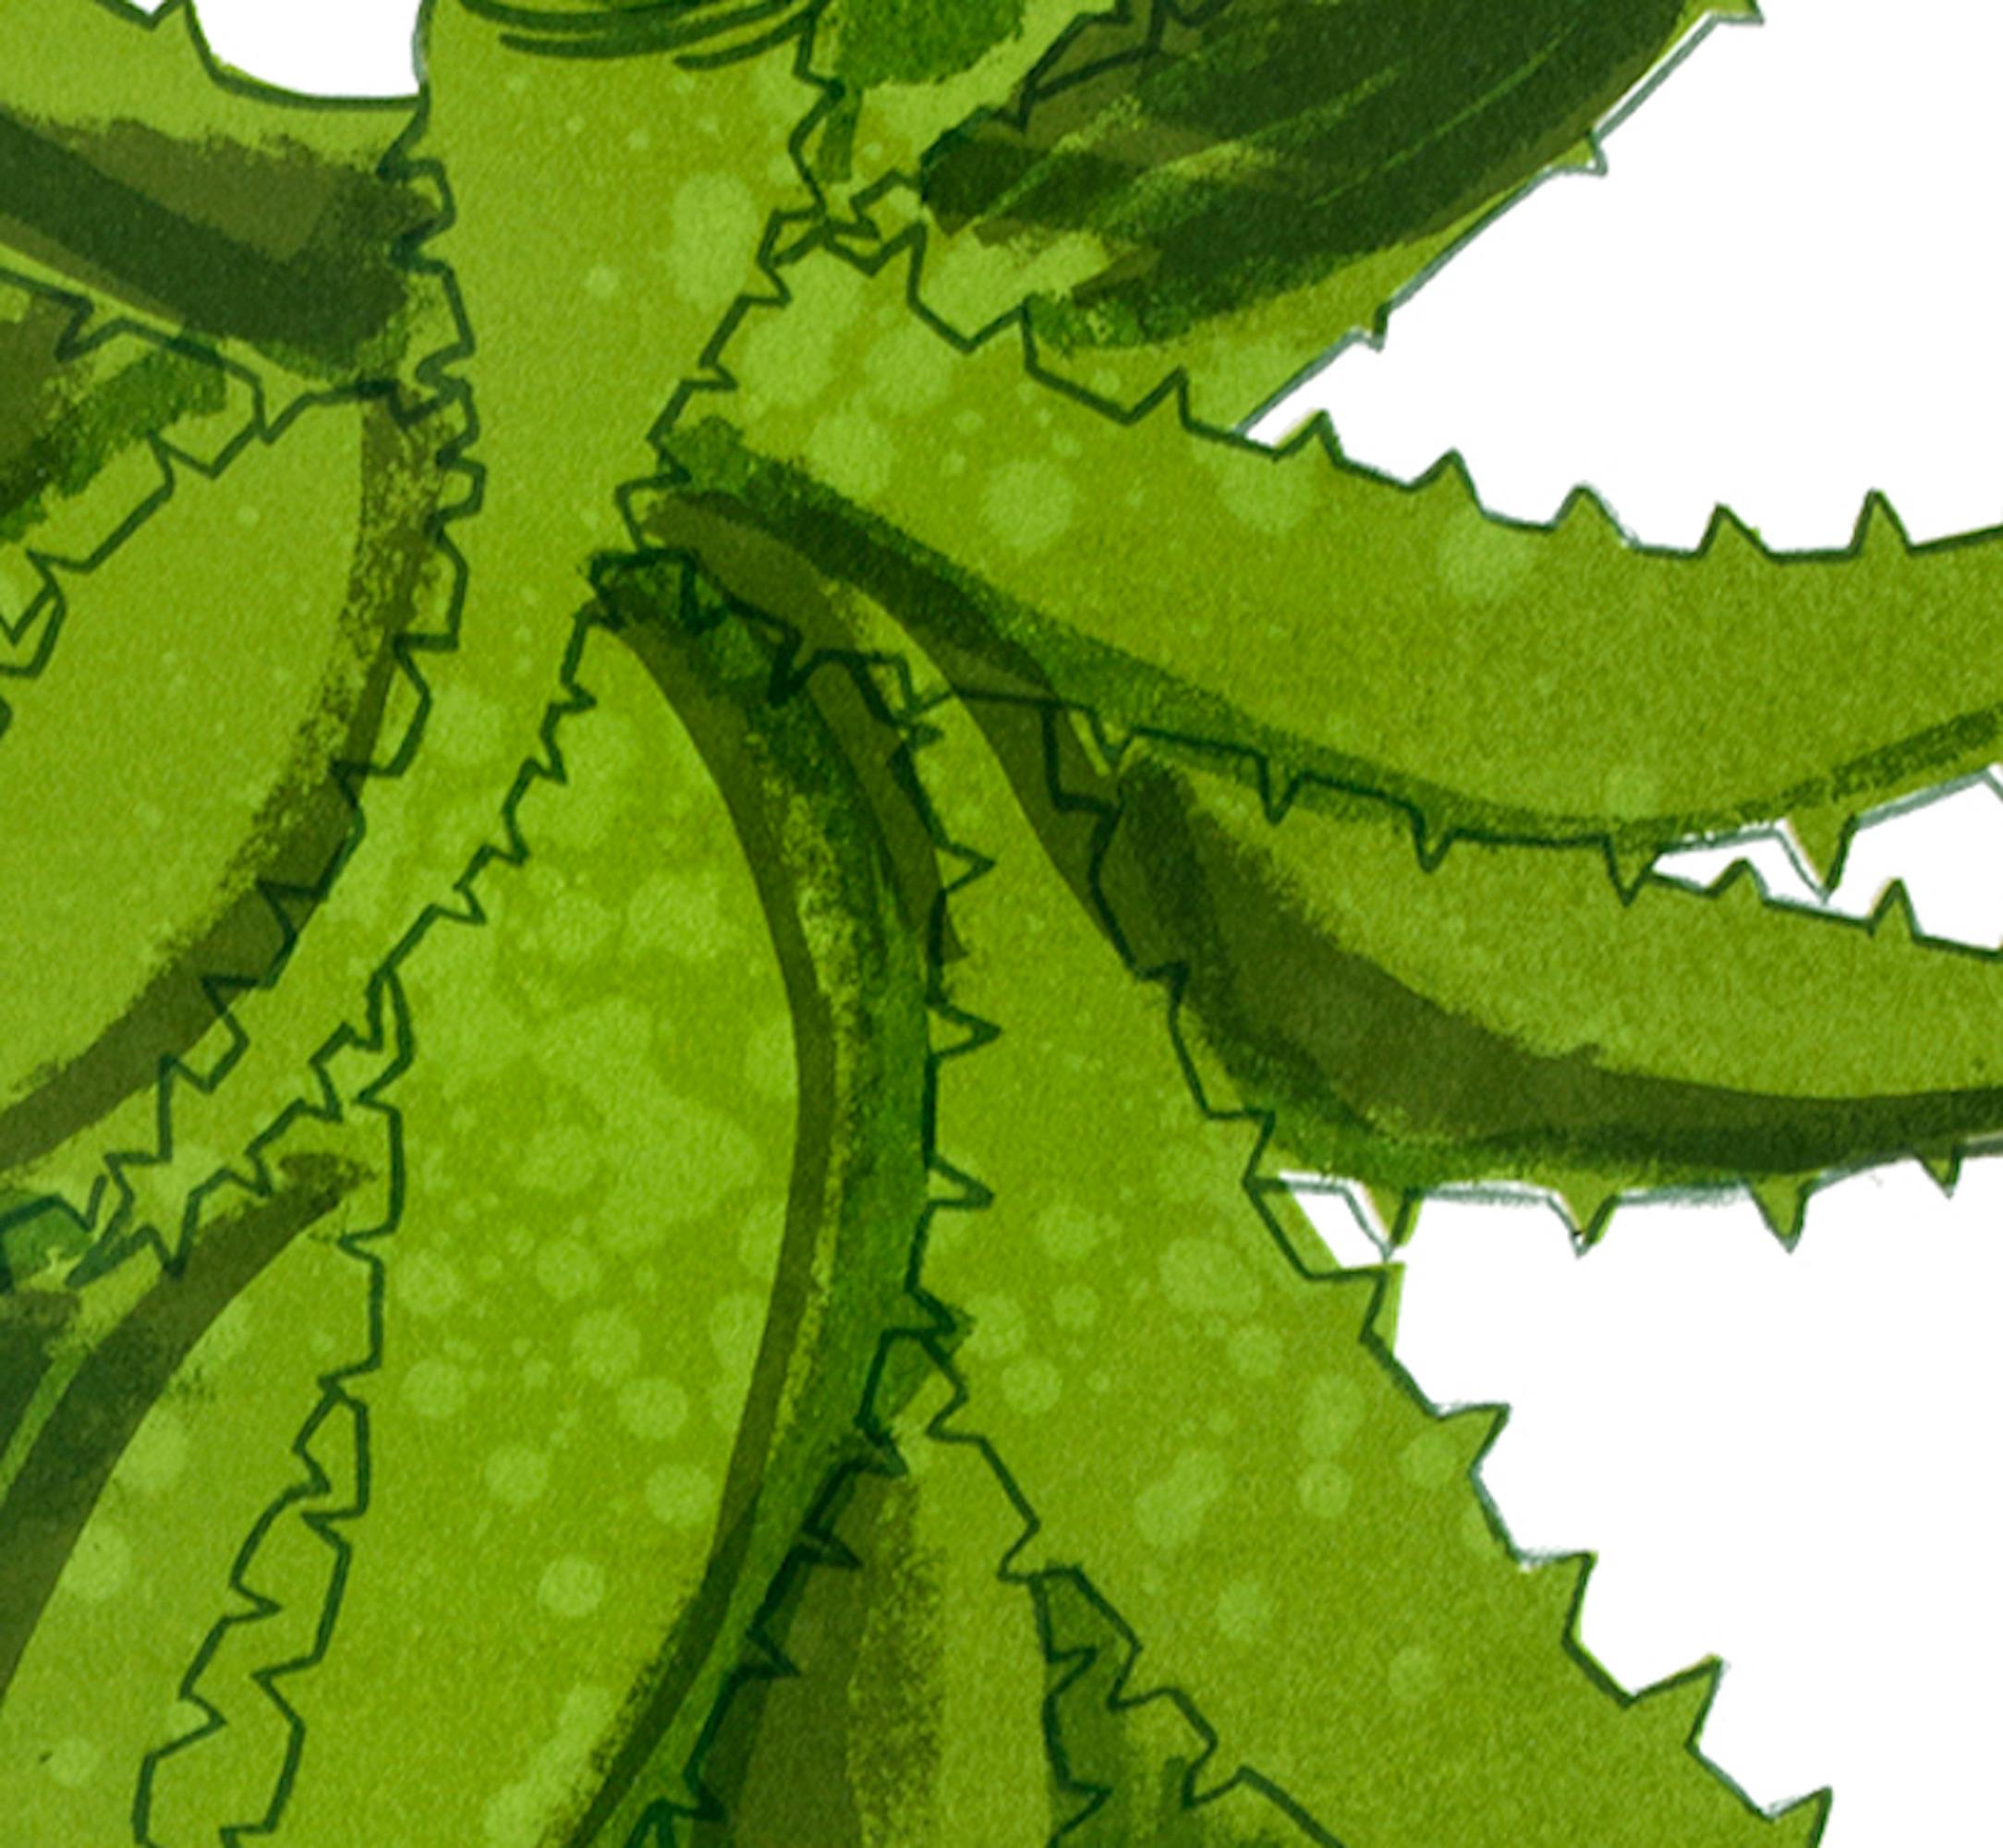 Nature morte d'une plante d'Aloe Vera par Kerry Day est une sérigraphie originale et variée, en édition limitée, à plusieurs couches. Imprimée sur du papier Somerset, elle a été imprimée jusqu'à l'extrémité de la feuille.
Kerry Day est disponible en